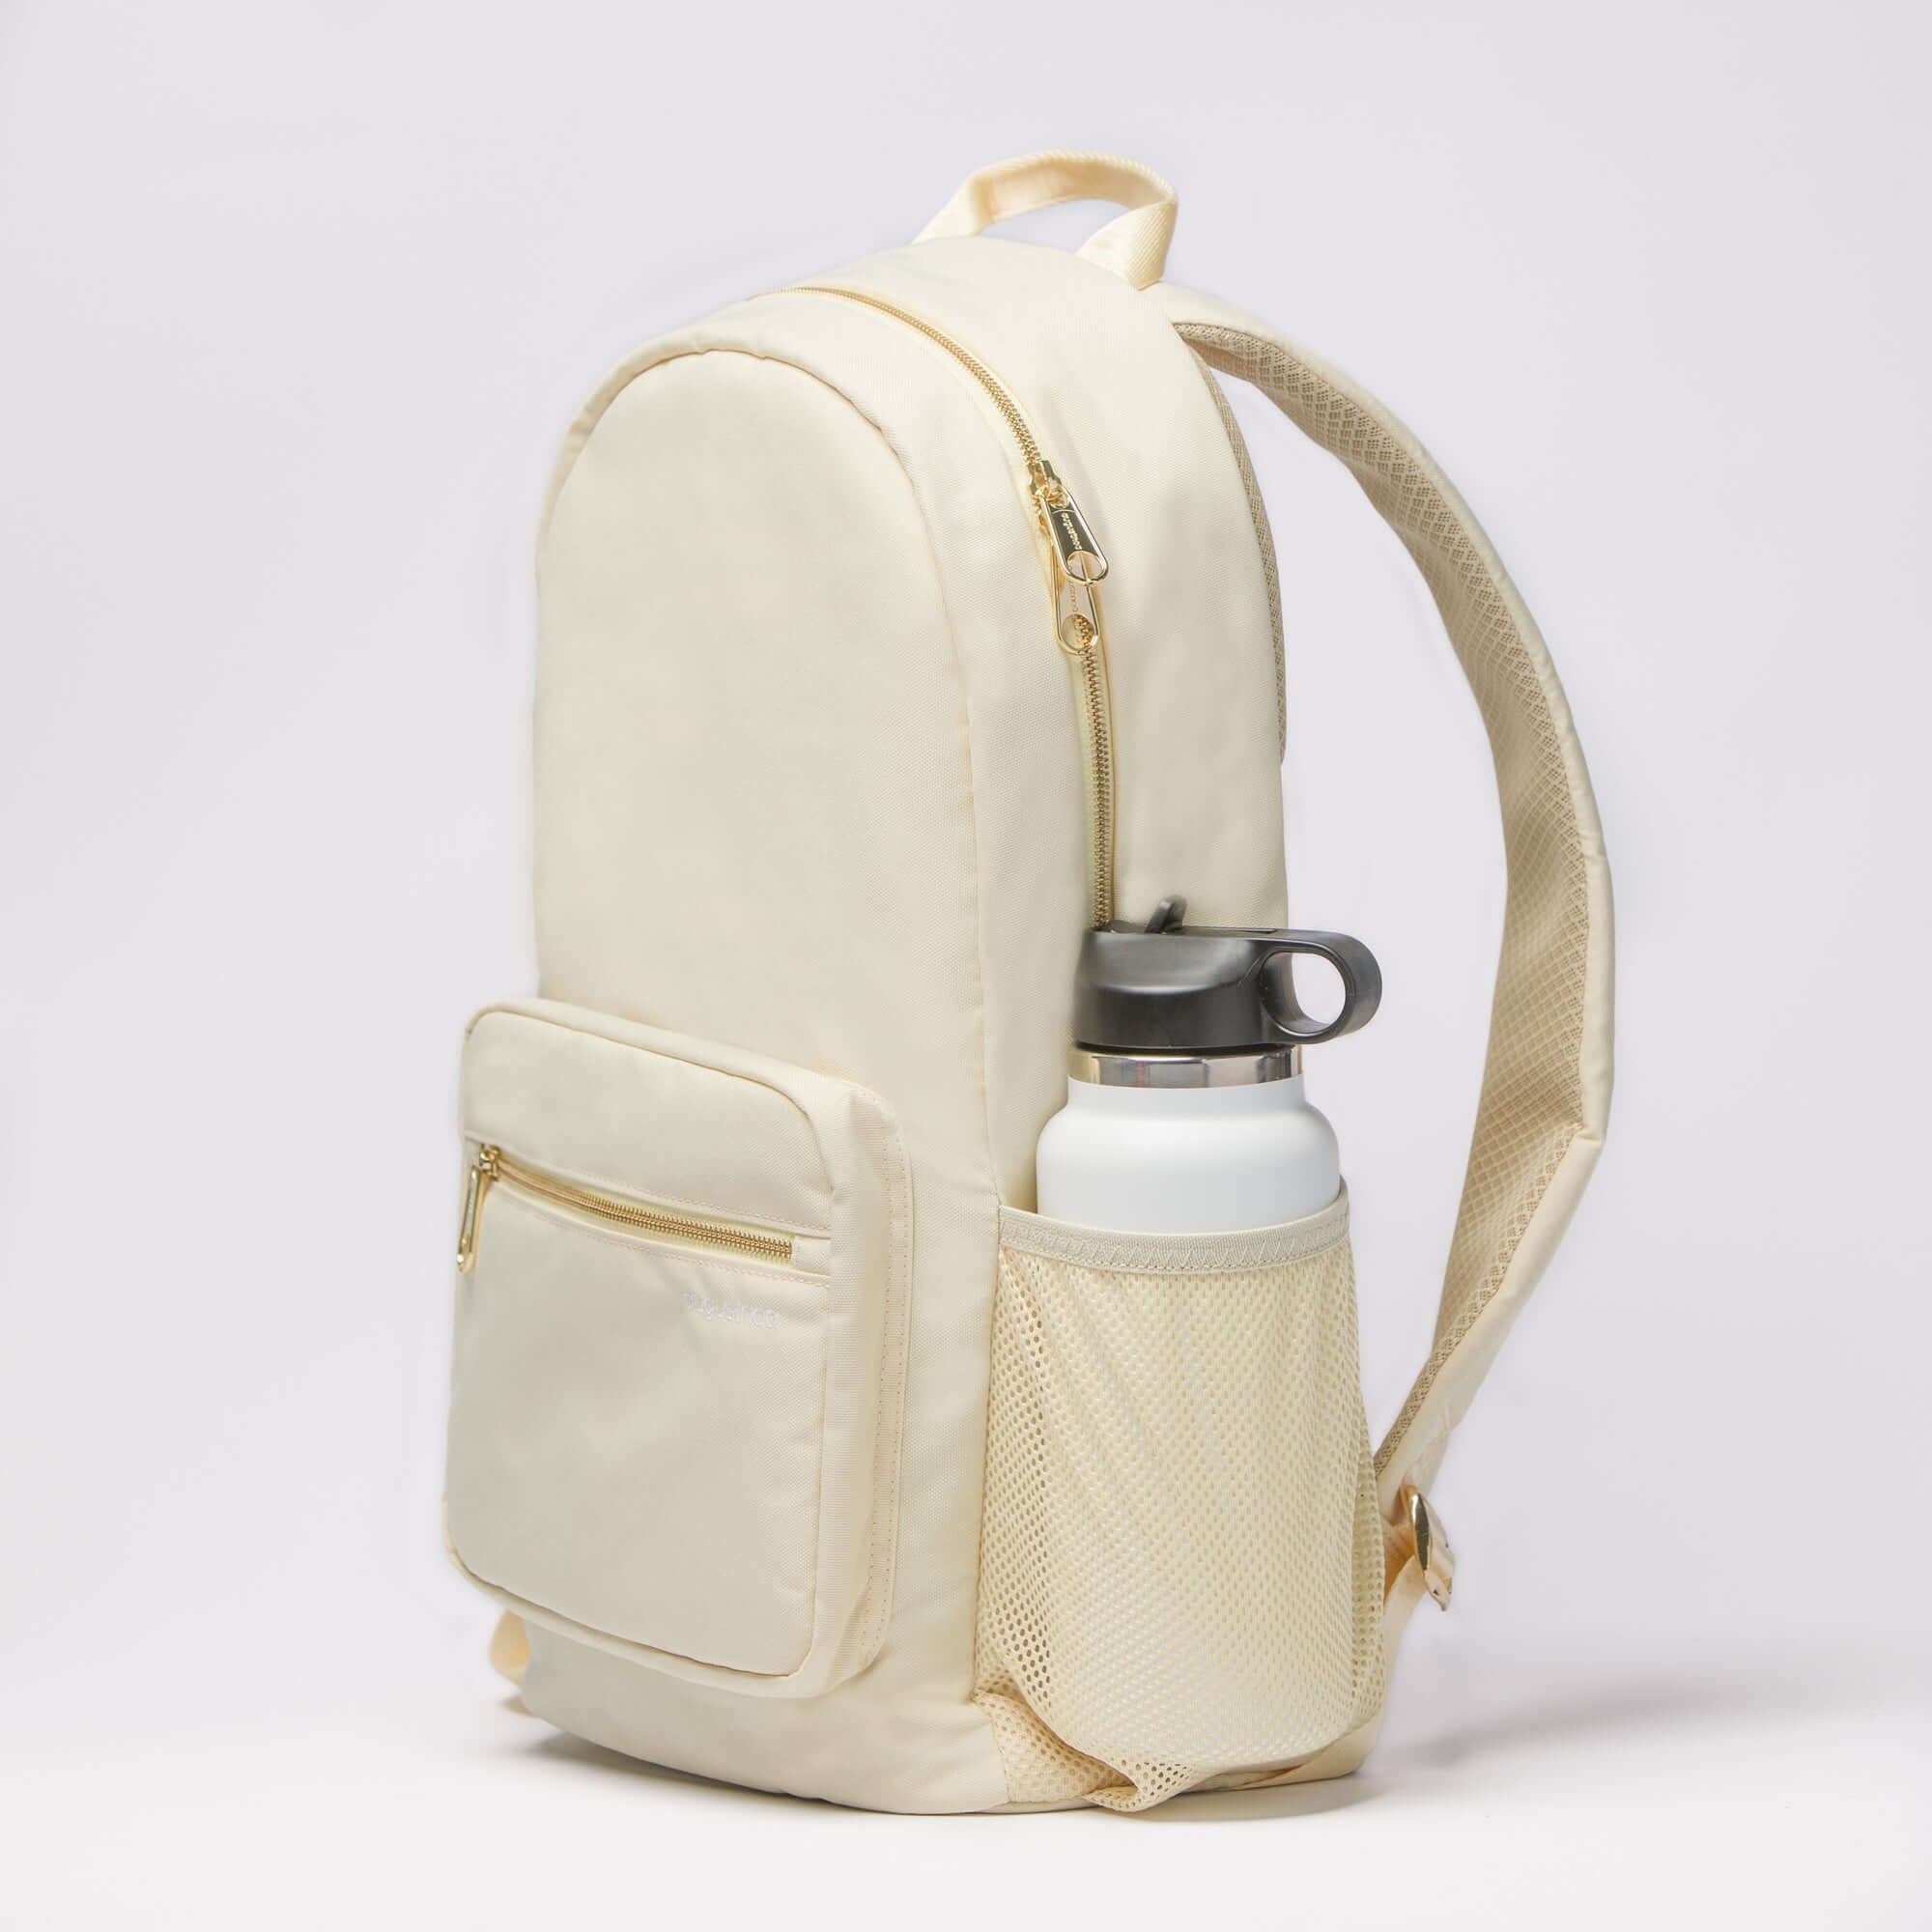 augustnoa Classic Noa Backpack - White